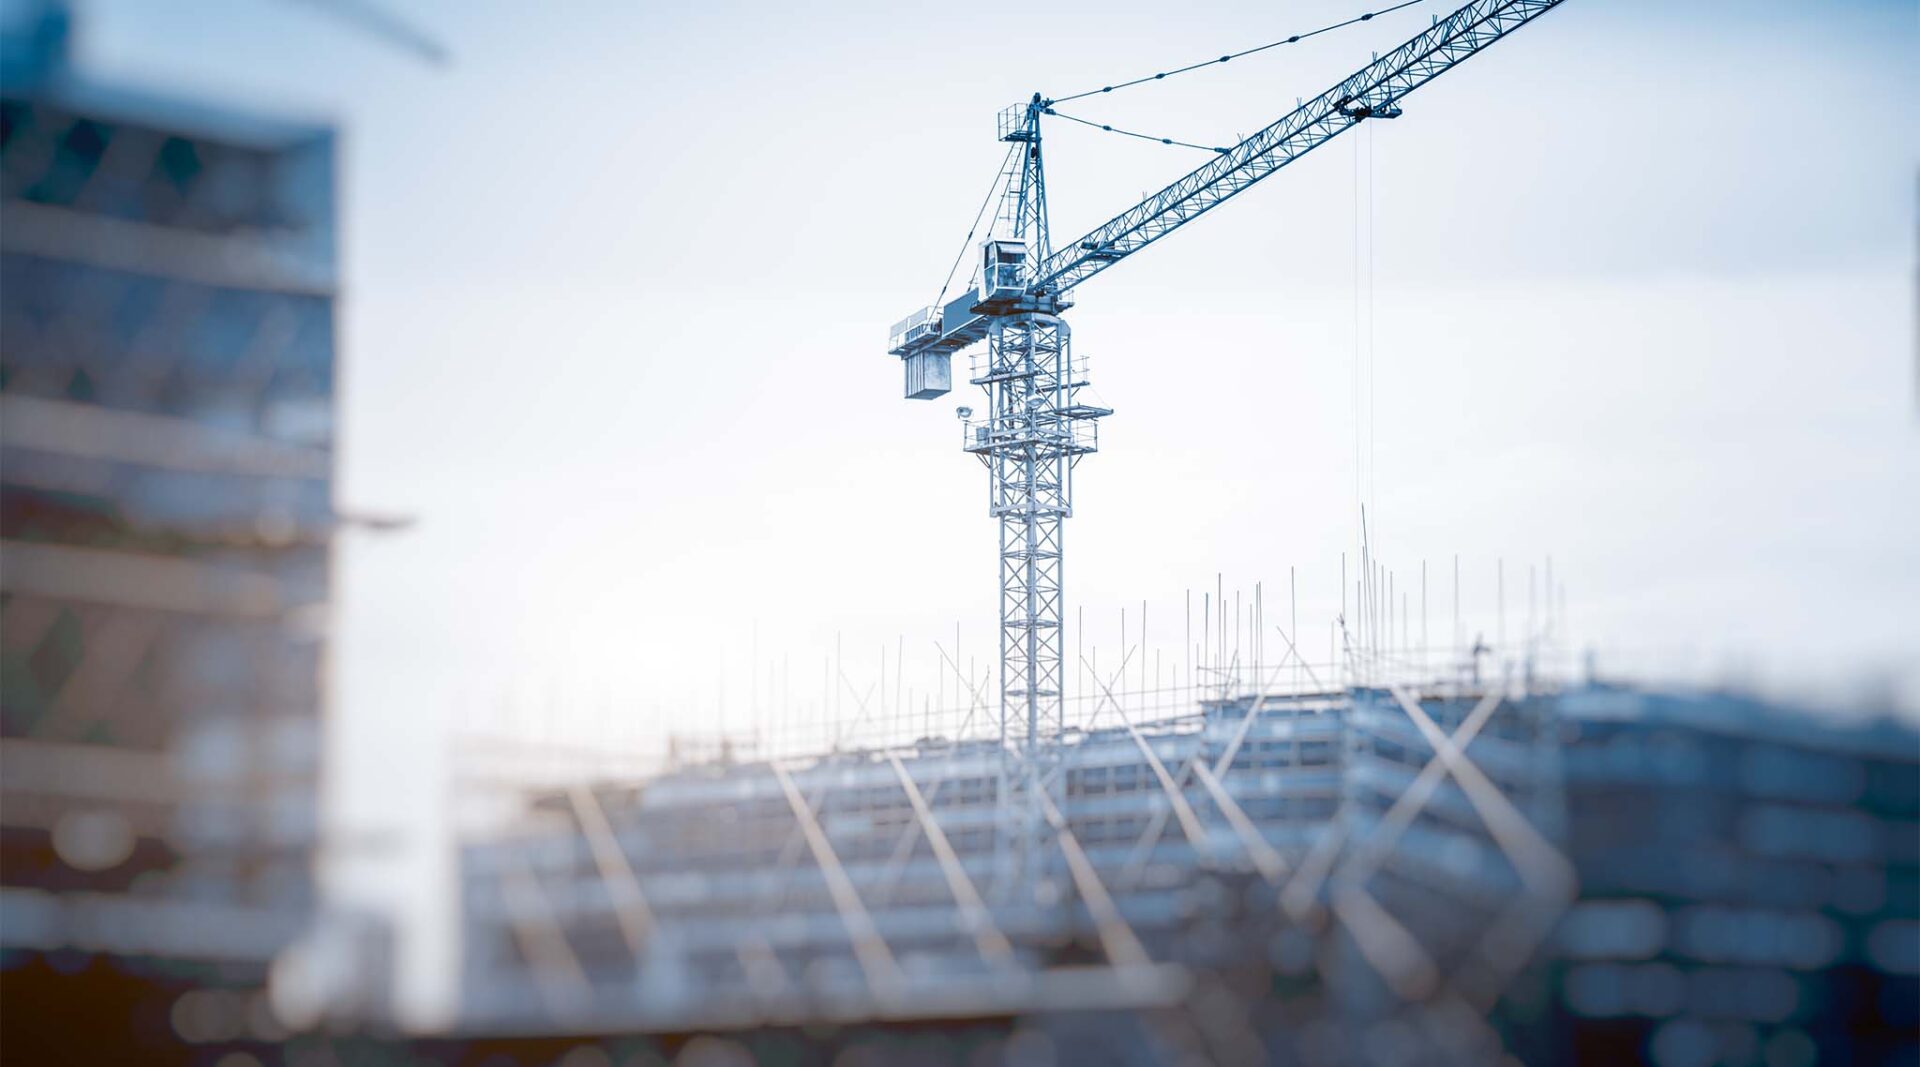 Crane on a building construction site